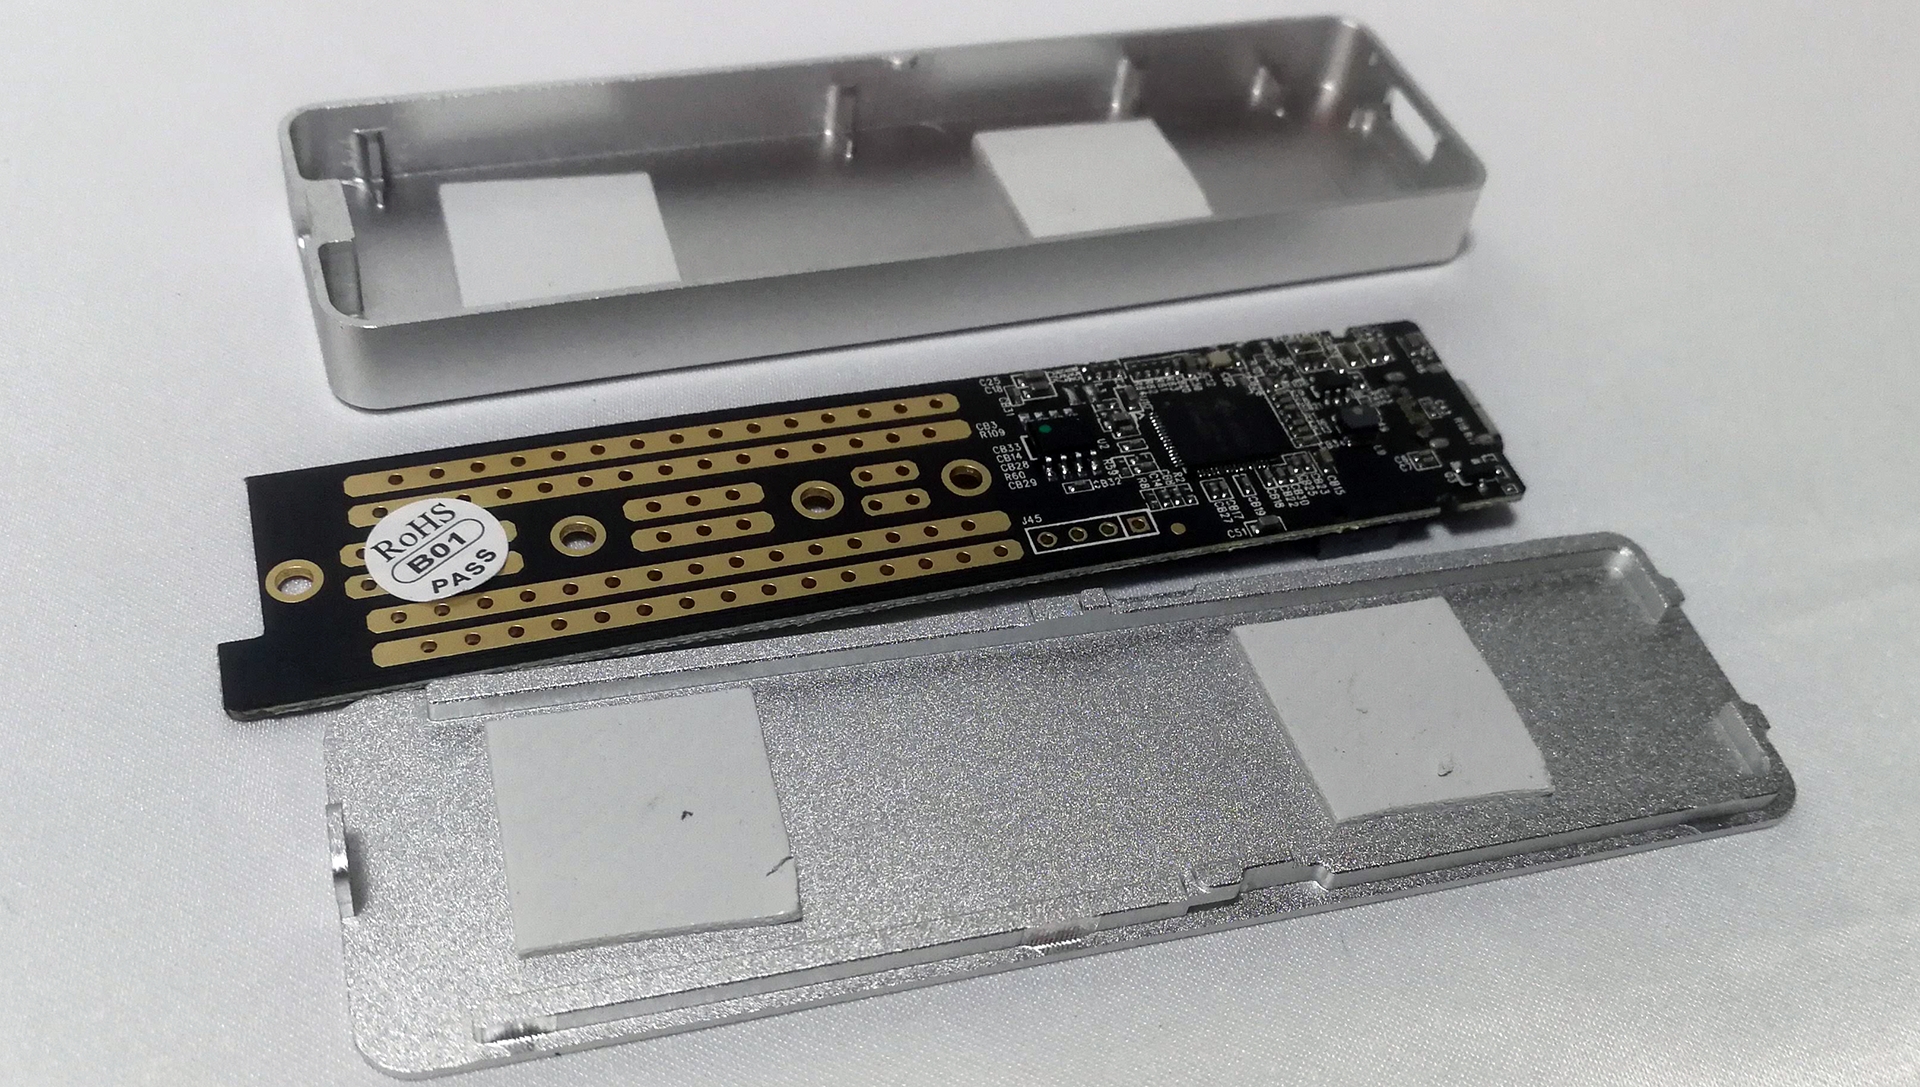 ORICOのNVMe M.2 SSD対応ケースで爆速外付けUSBストレージが簡単に手に入る | おっさんゲーマーどっとねっとおっさんゲーマーどっとねっと